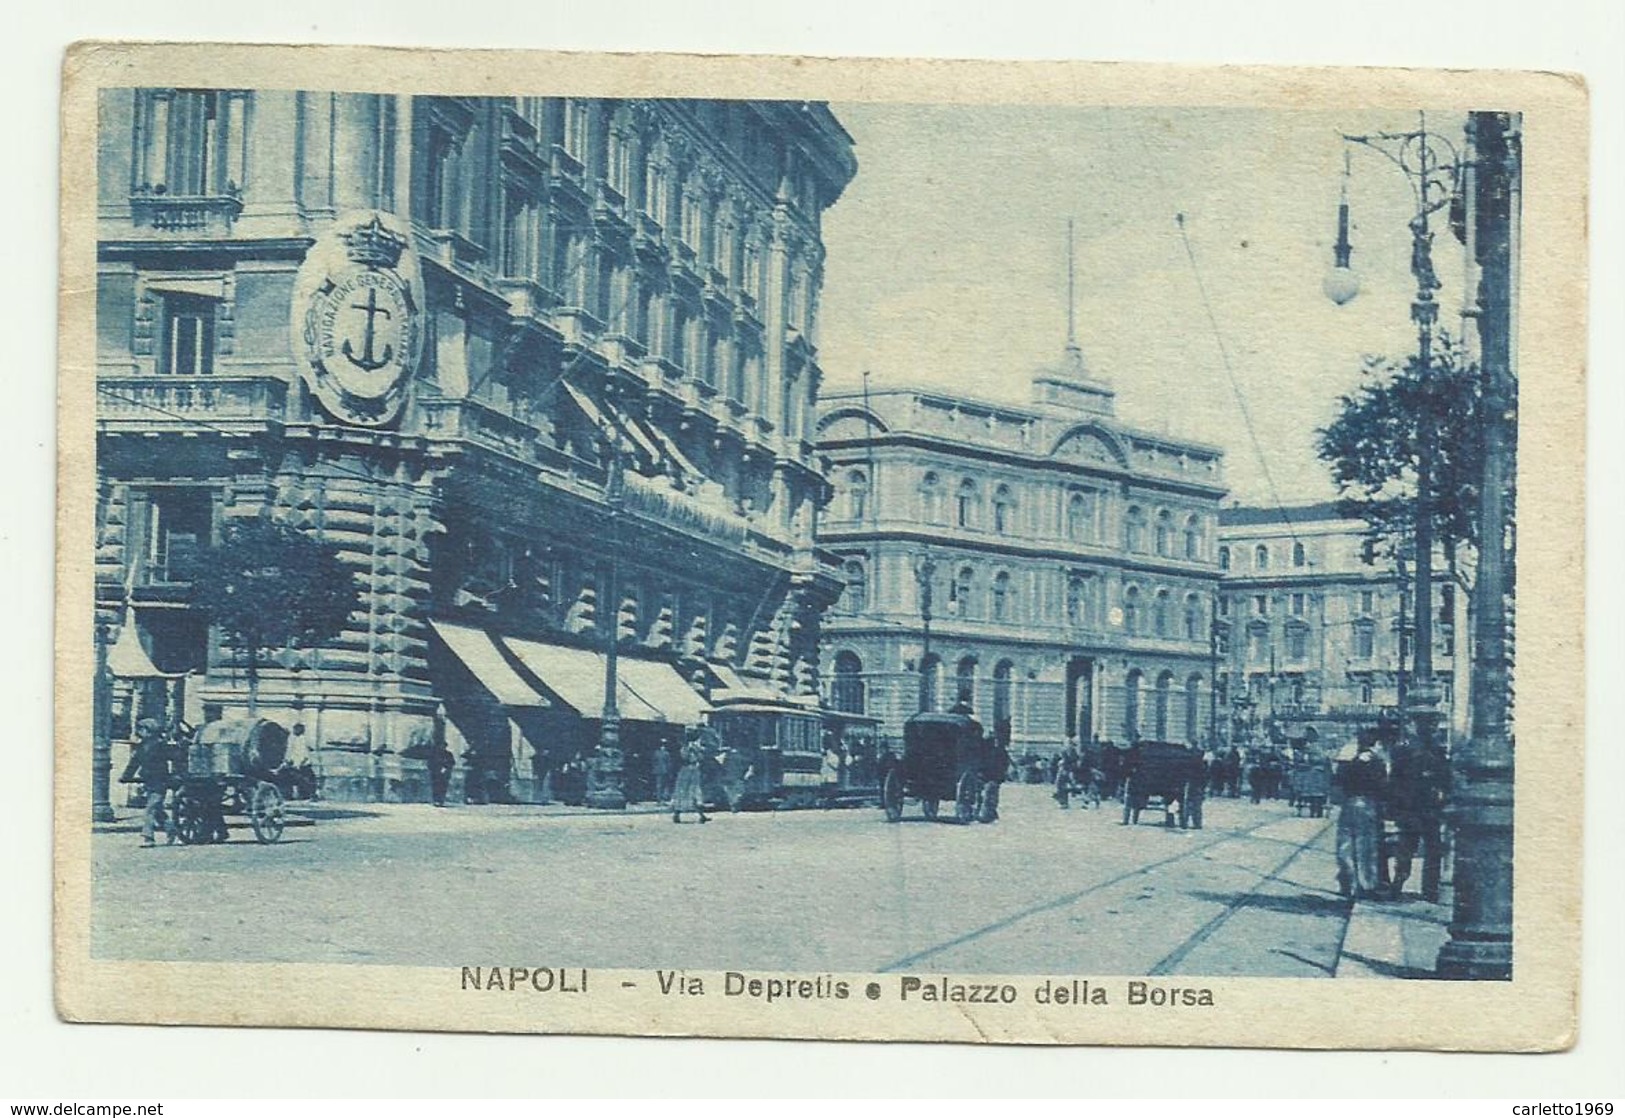 NAPOLI - VIA DEPRETIS E PALAZZO DELLA BORSA 1925  VIAGGIATA FP - Napoli (Neapel)